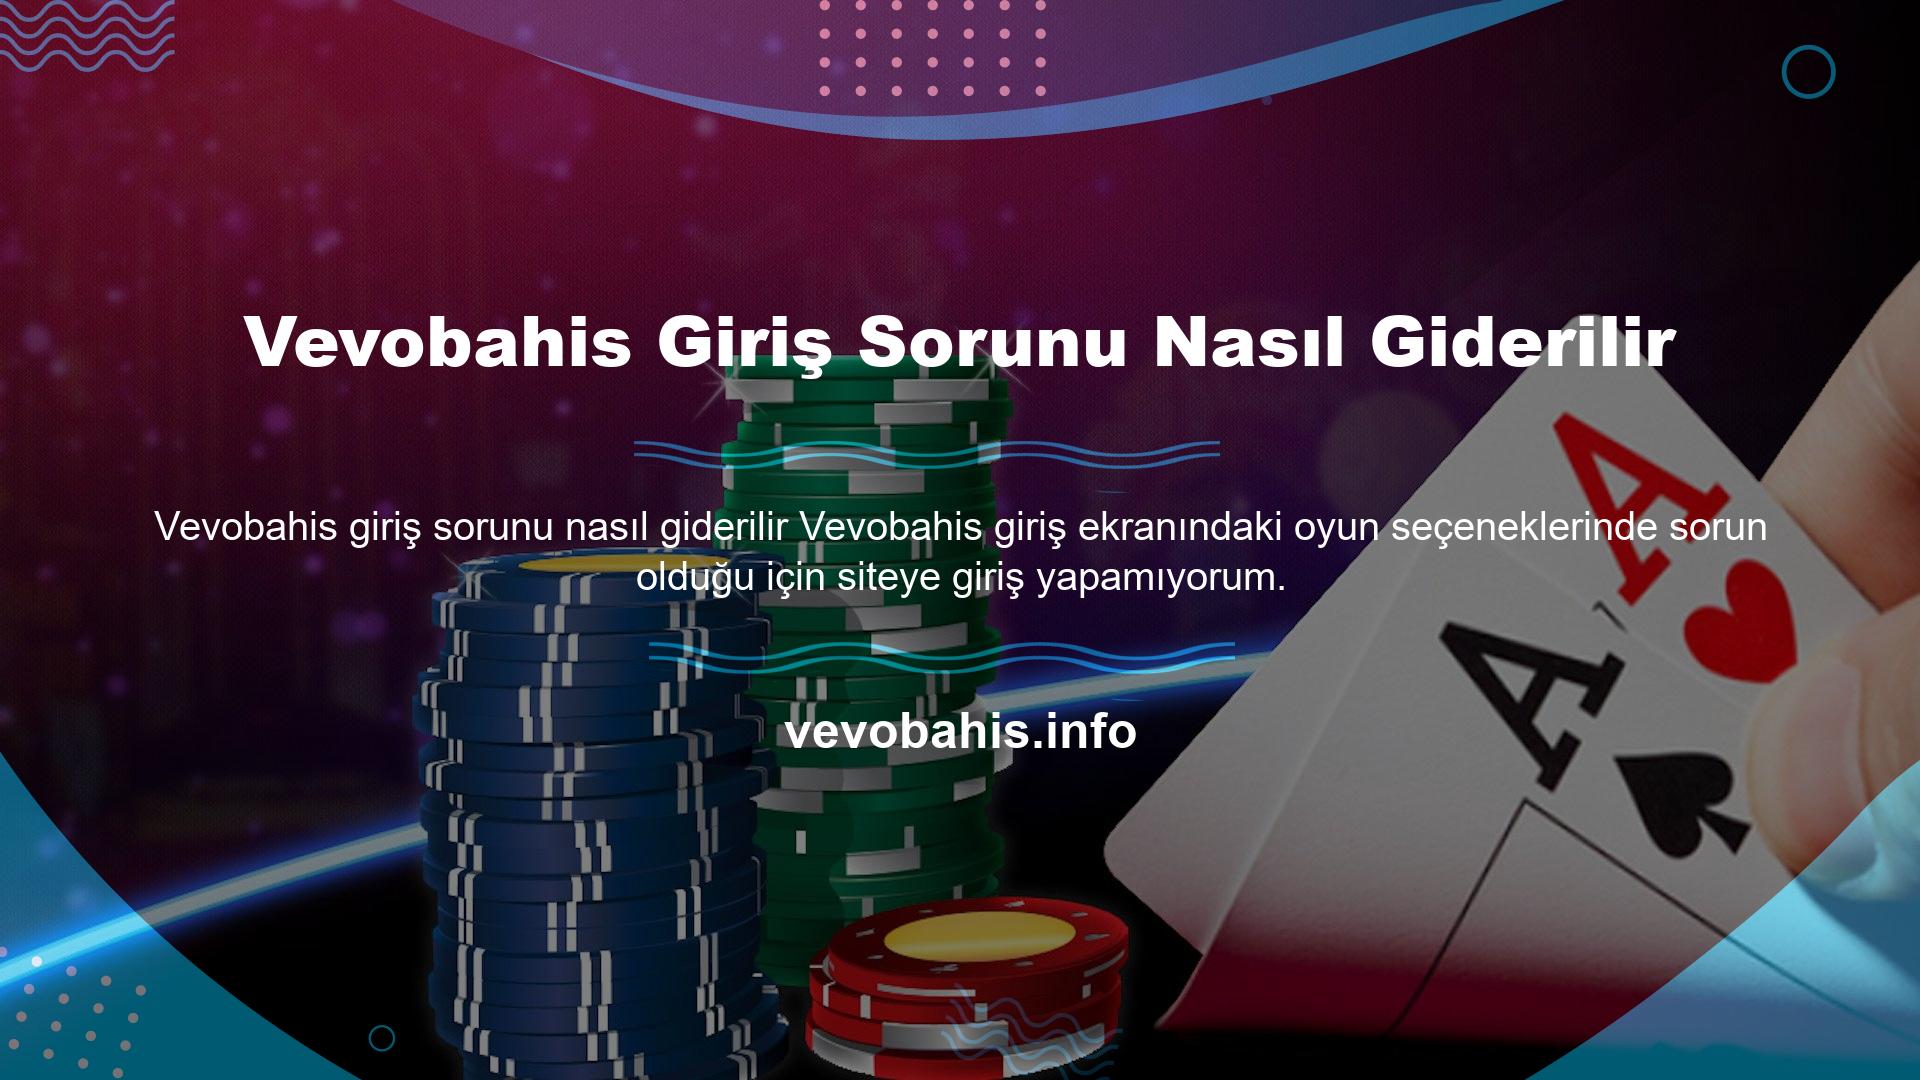 Bu durumda oyuncu, Vevobahis giriş sorununun nasıl çözüleceğini Vevobahis web sitesinde araştırır